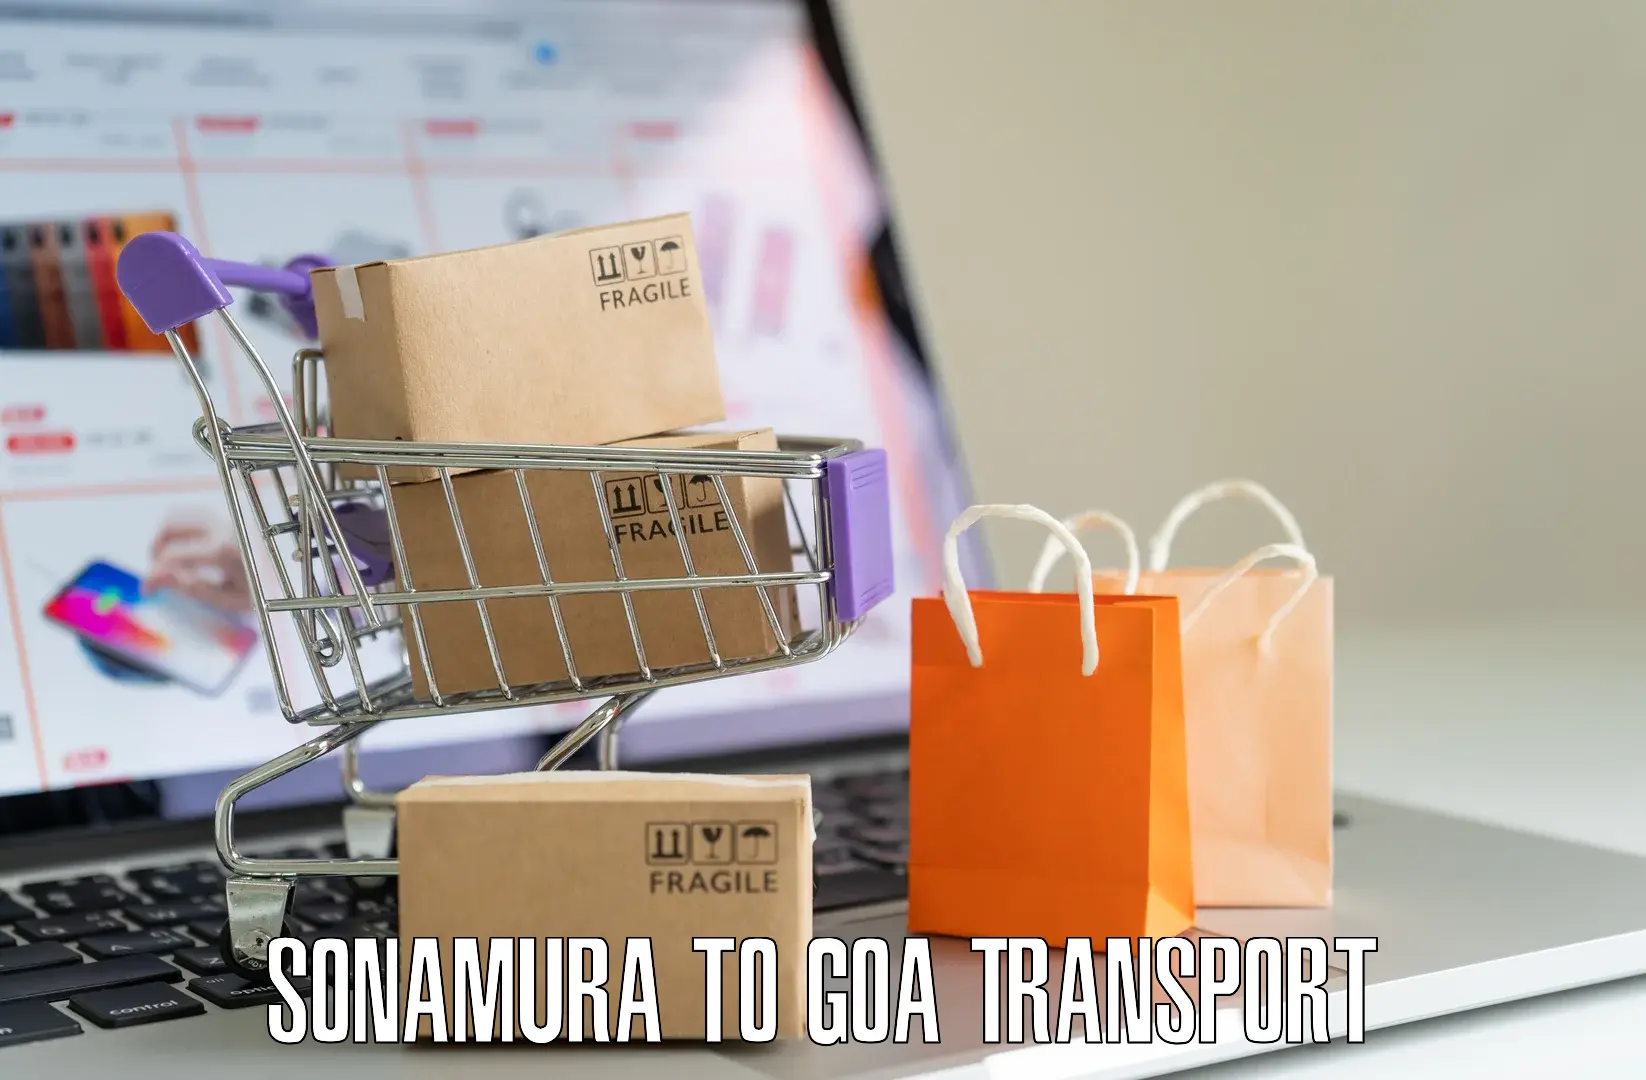 Daily transport service Sonamura to Canacona